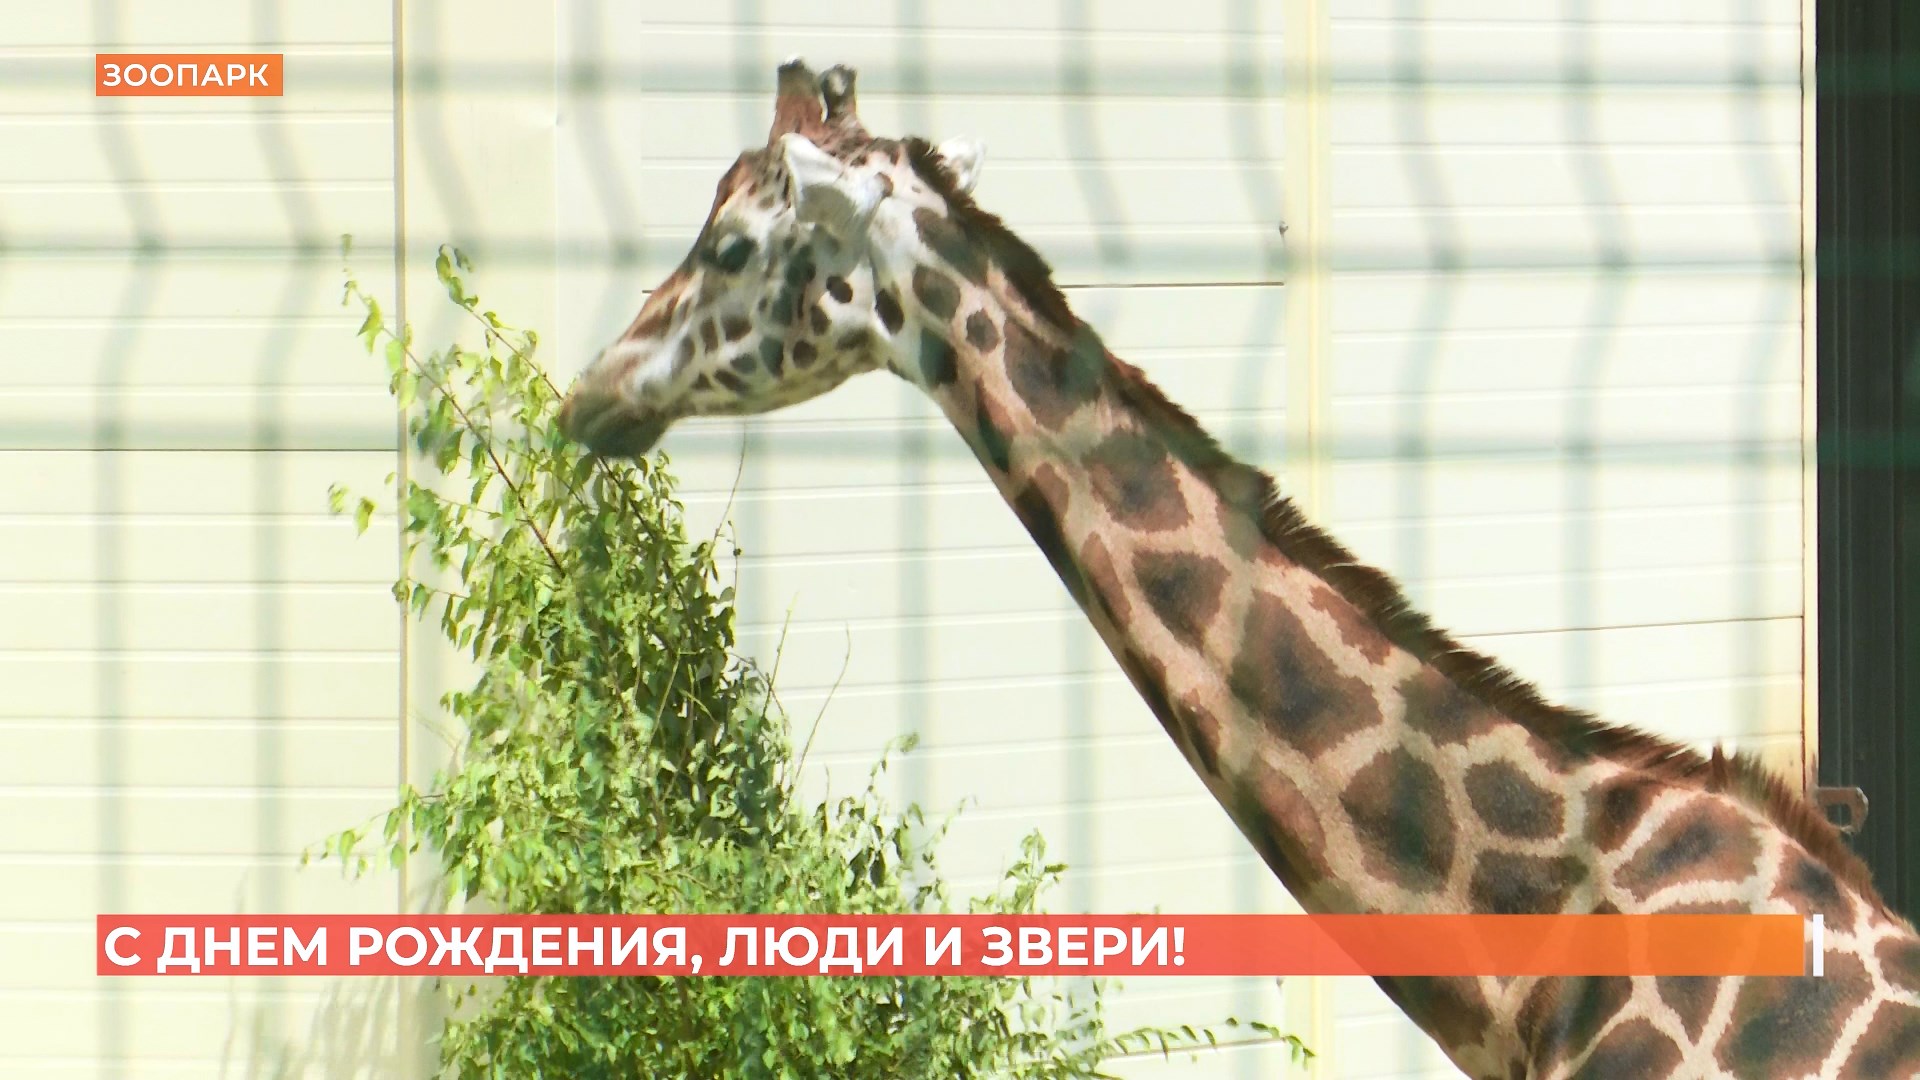 Ростовский зоопарк сегодня отметил 94-летие